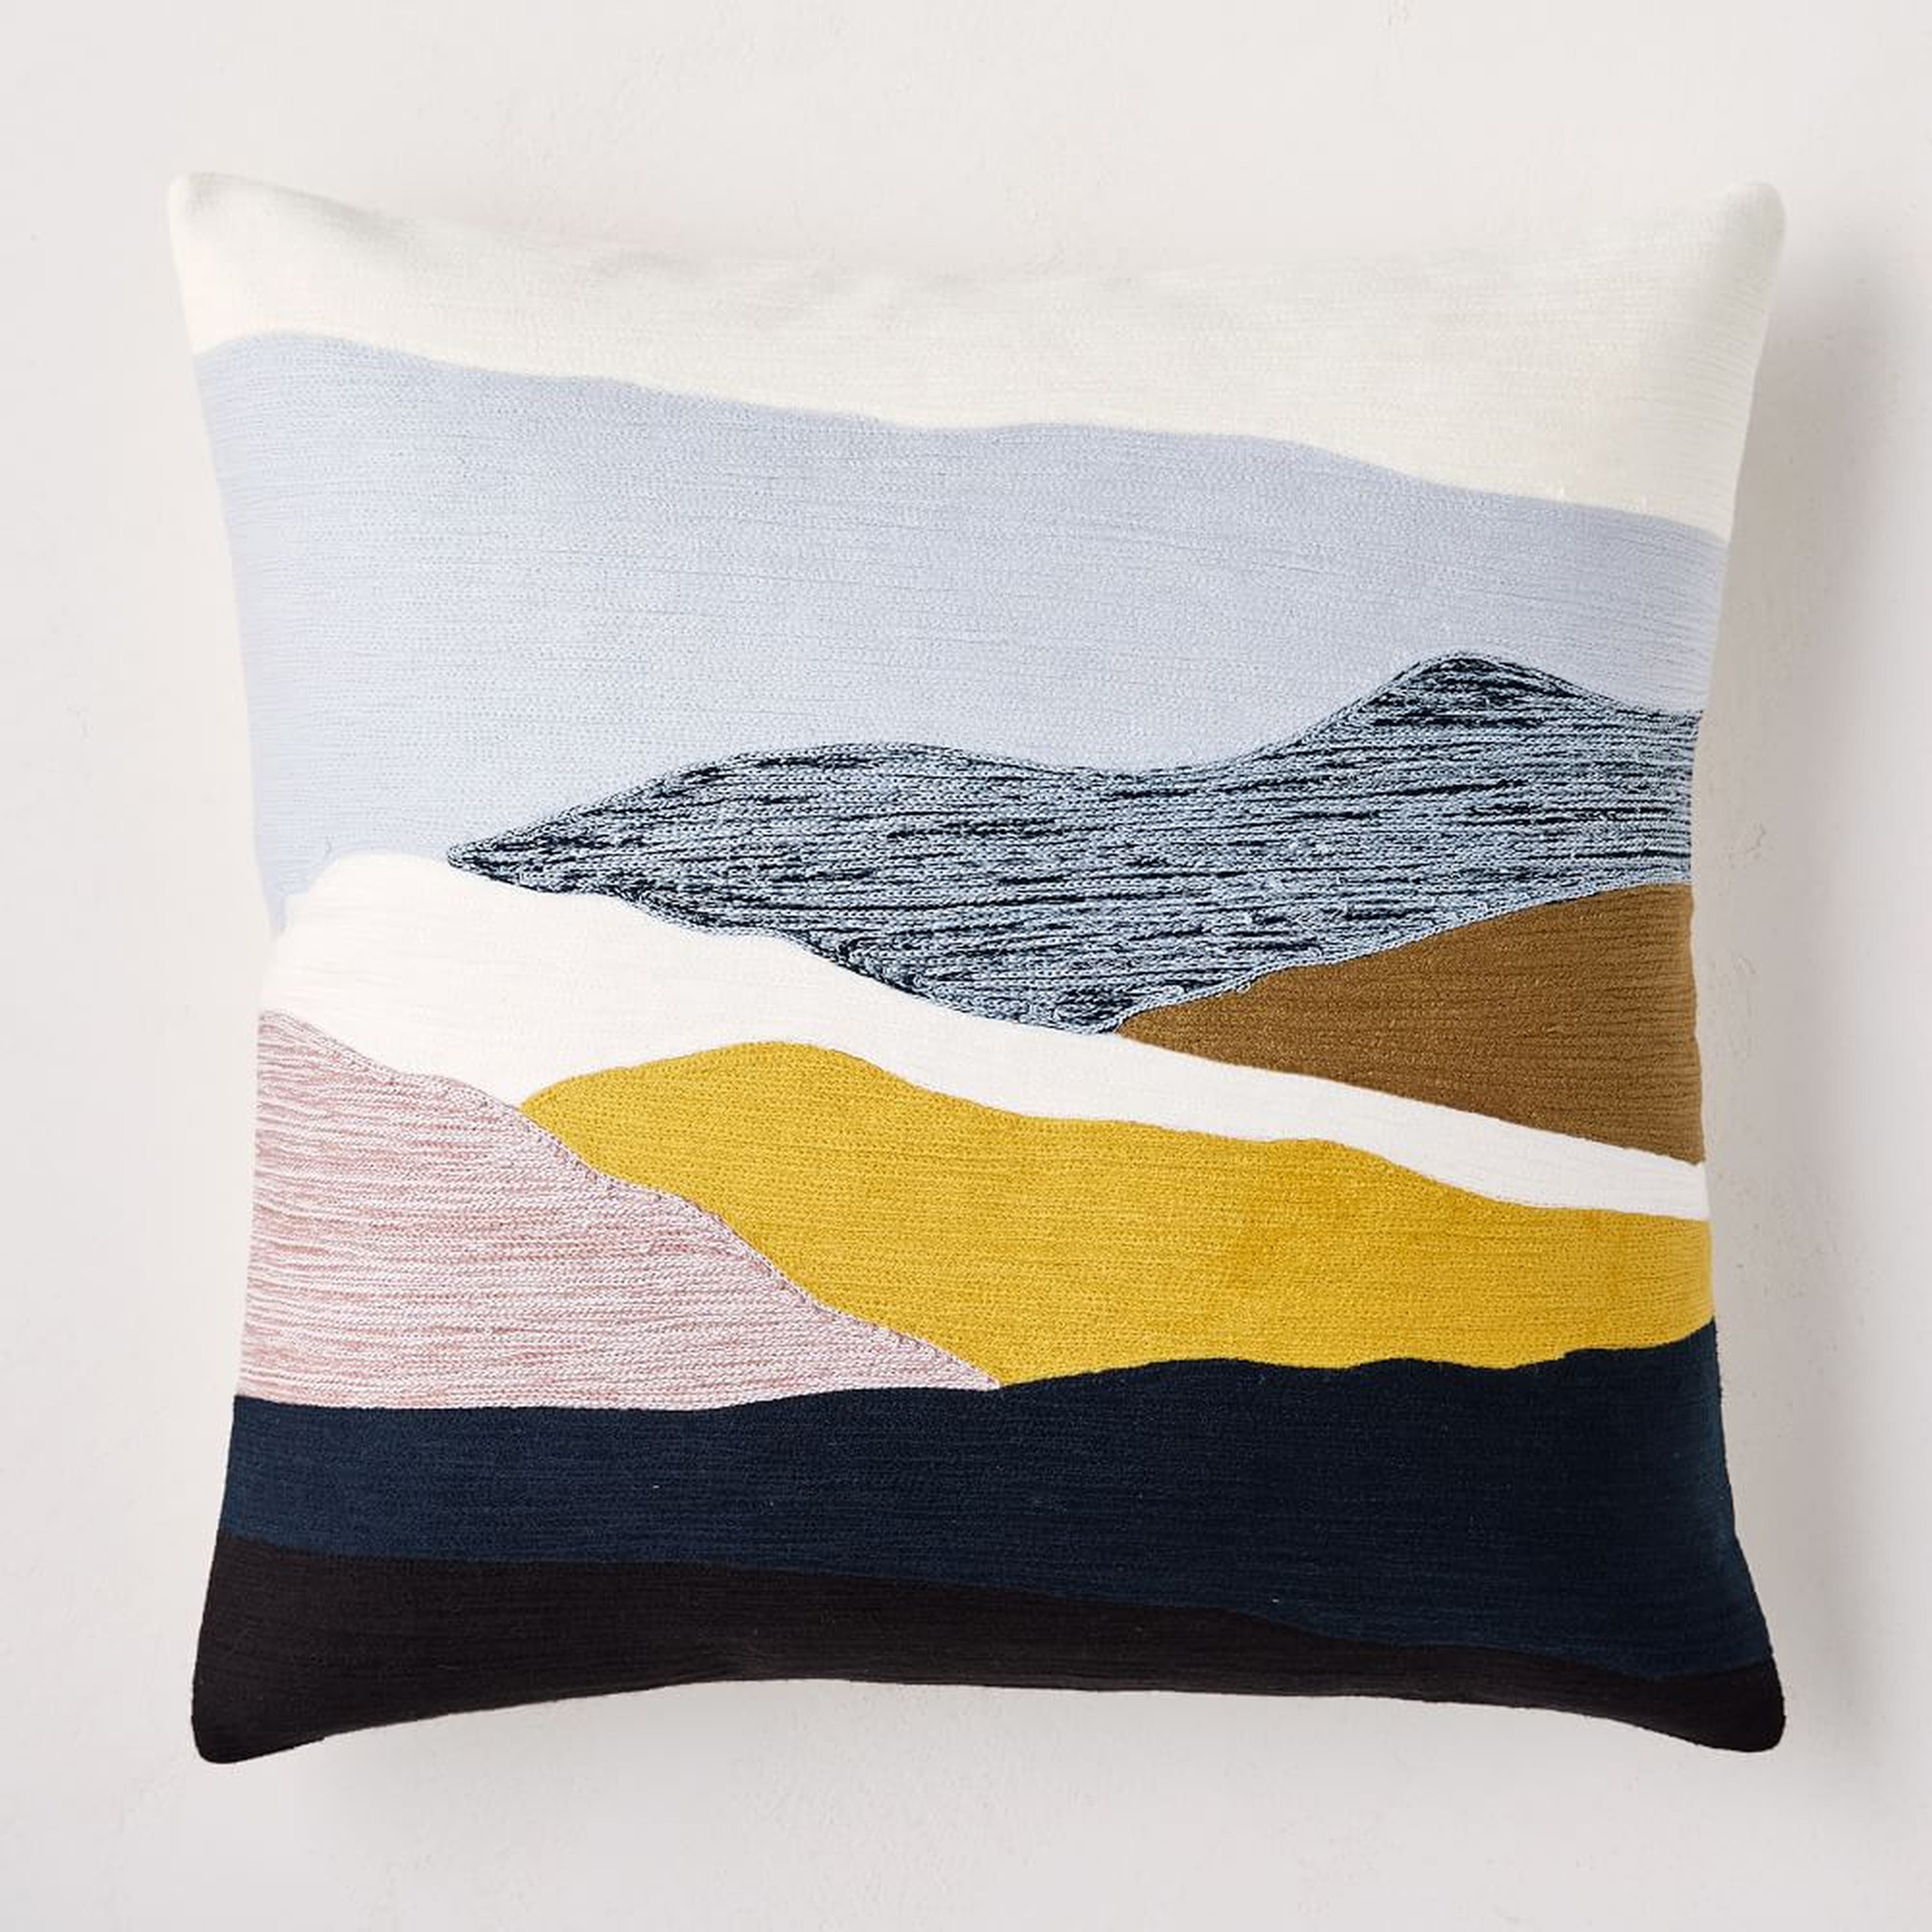 Crewel Landscape Pillow Cover, 20"x20", Silver Mist - West Elm